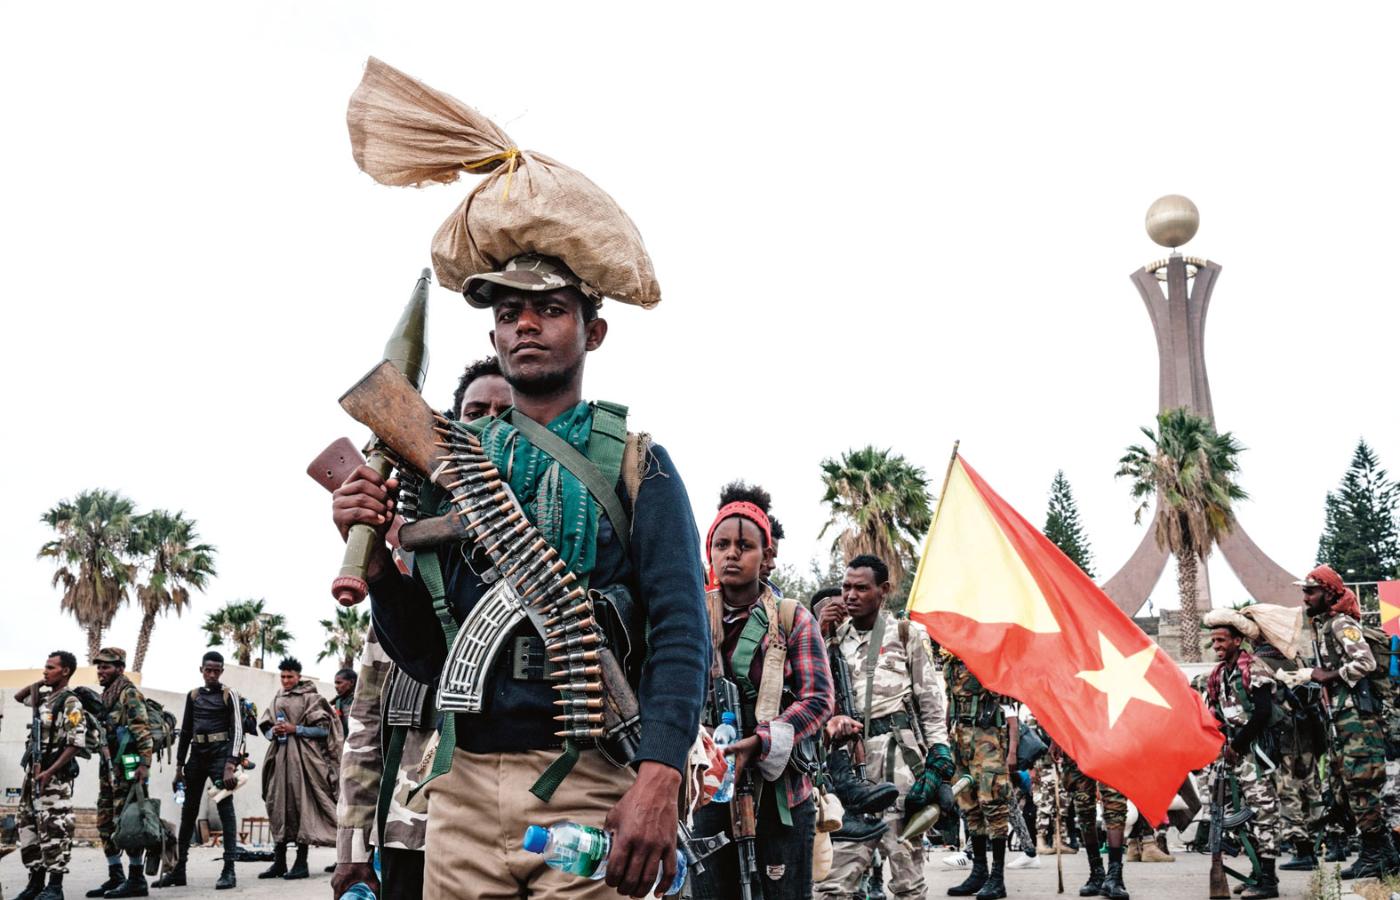 Bojownicy z Tigrajskiego Ludowego Frontu Wyzwolenia po odbiciu Mekelie, stolicy regionu Tigraj.